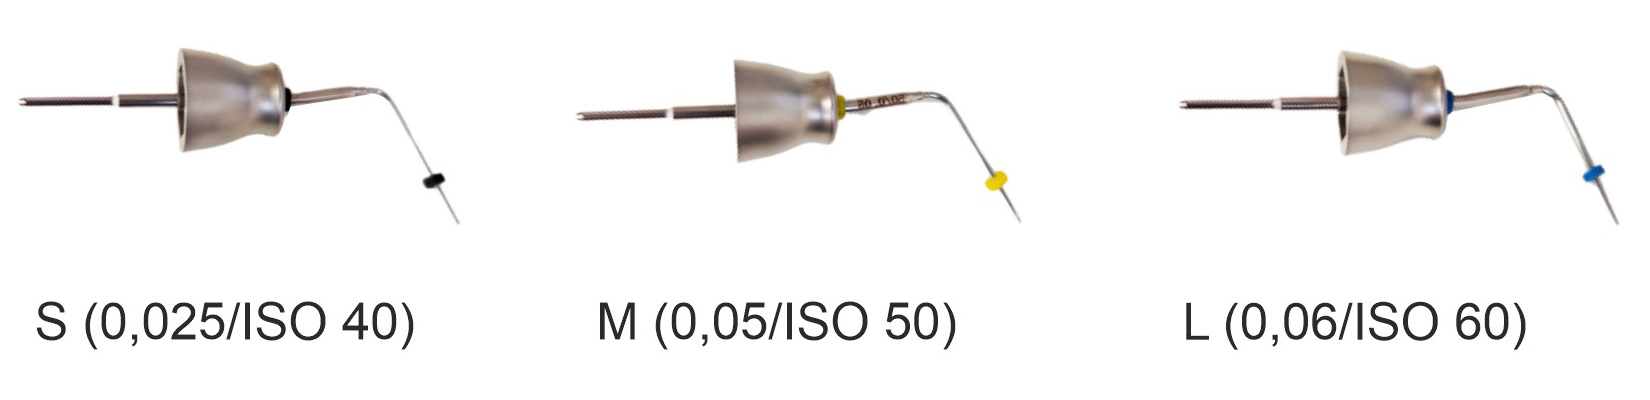 Беспроводной аппарат GuttaEst02 для компакции и обрезания гуттаперчивых штифтов